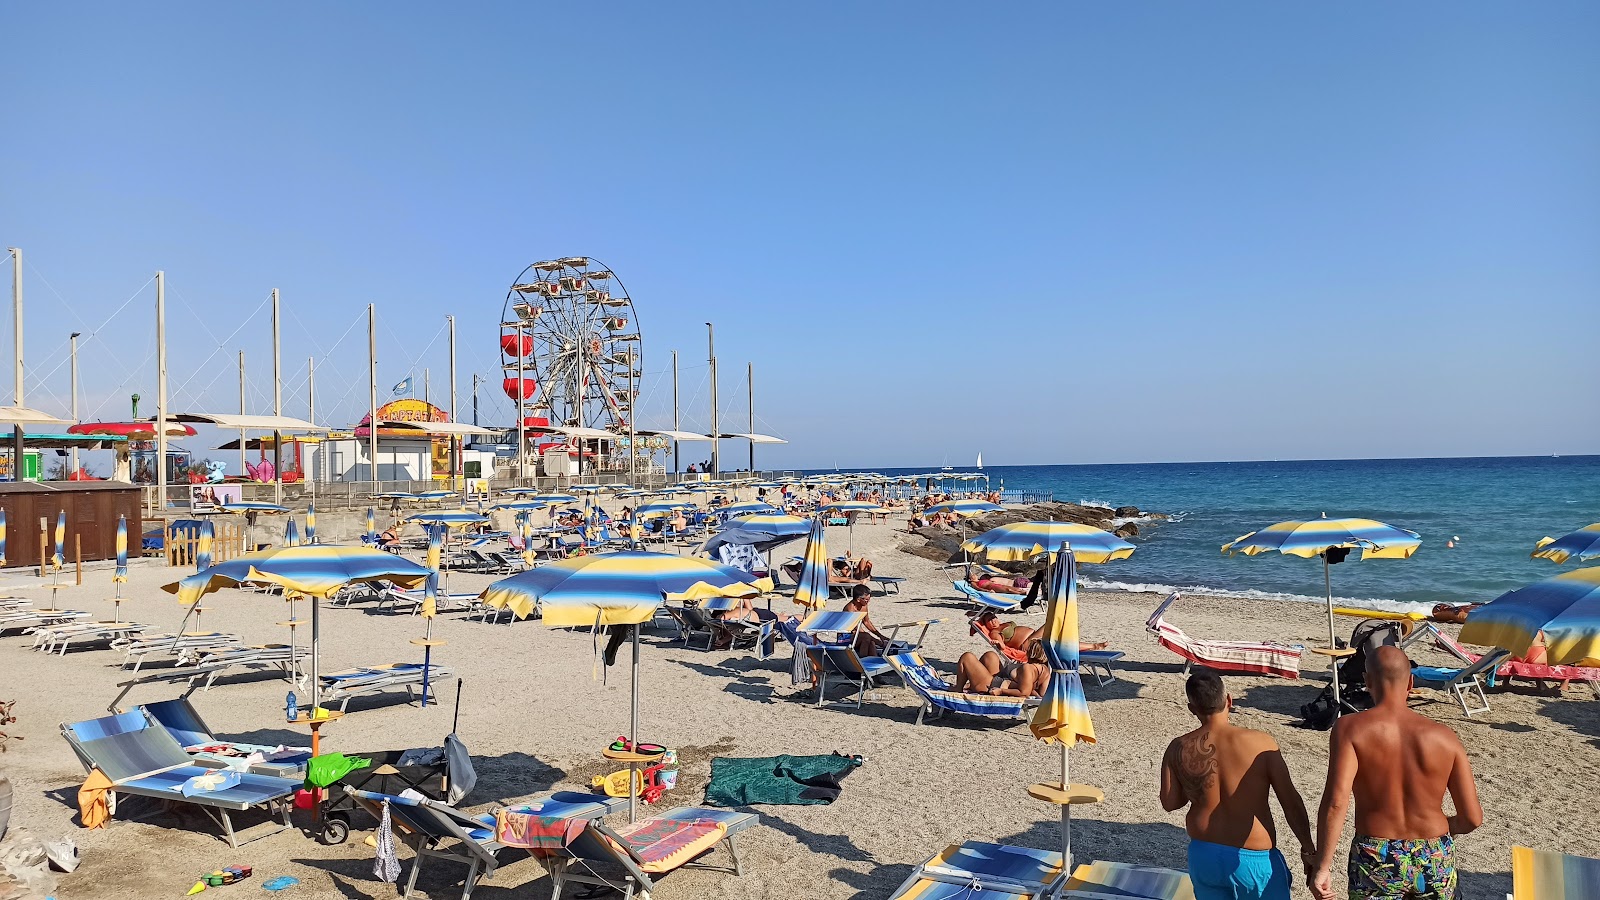 Foto de Spiaggia di Borghetto - lugar popular entre os apreciadores de relaxamento